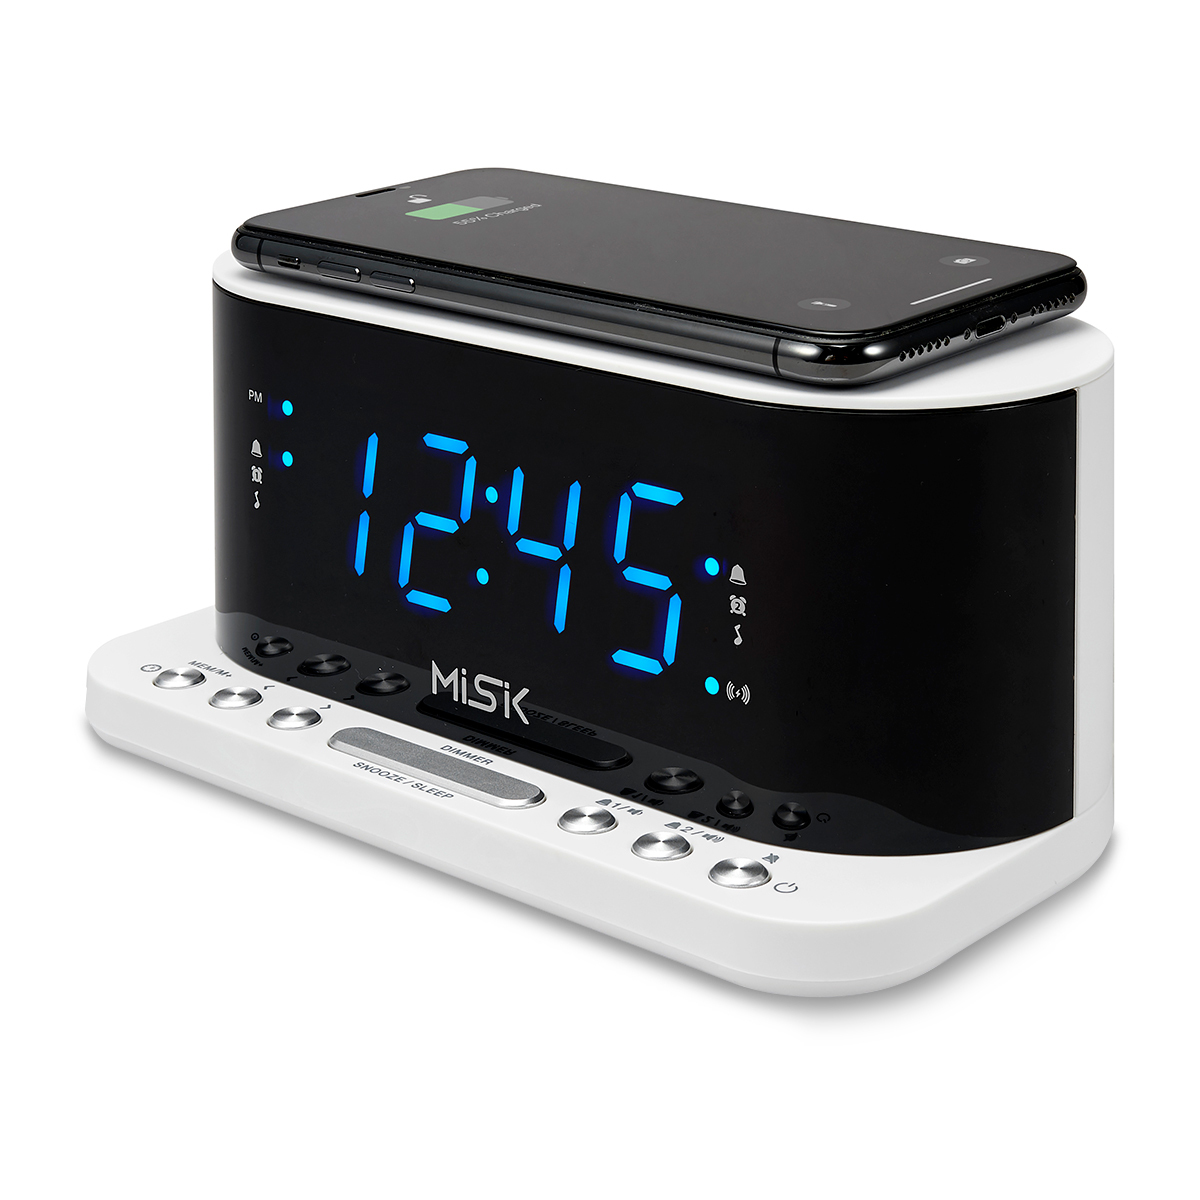 Radio Despertador Smart Misik Blanco, Radios y despertadores, Audio, Audio y video, Todas, Categoría